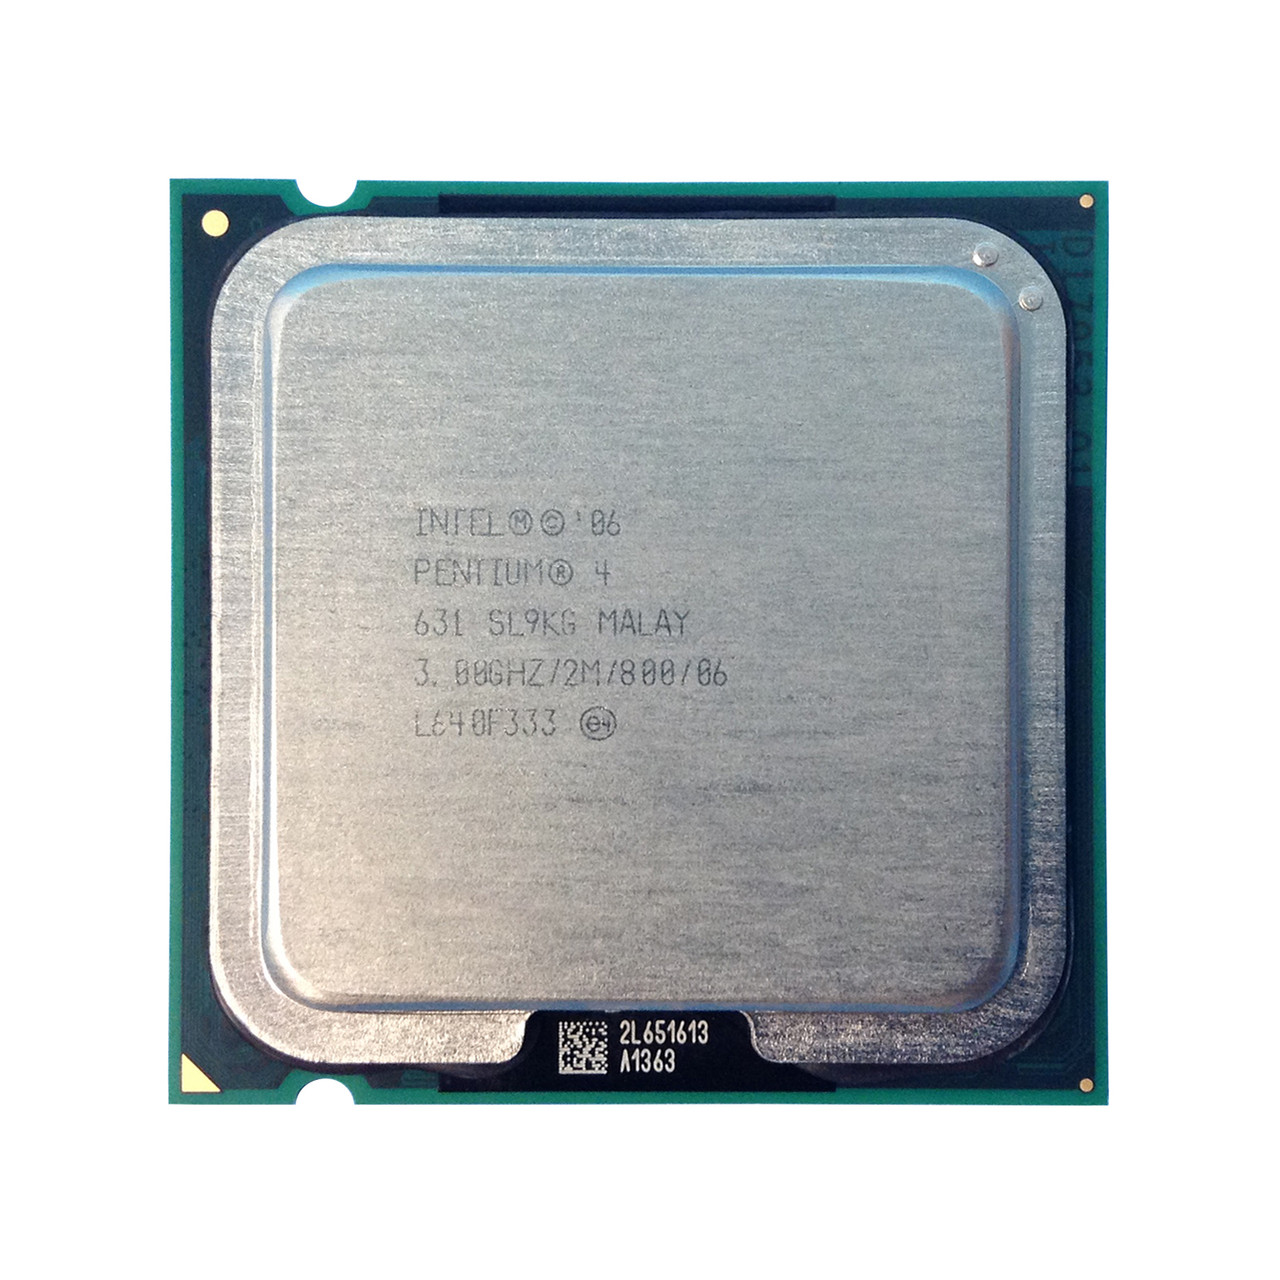 Dell MW907 P4 3.0Ghz 2MB 800FSB 631 Processor